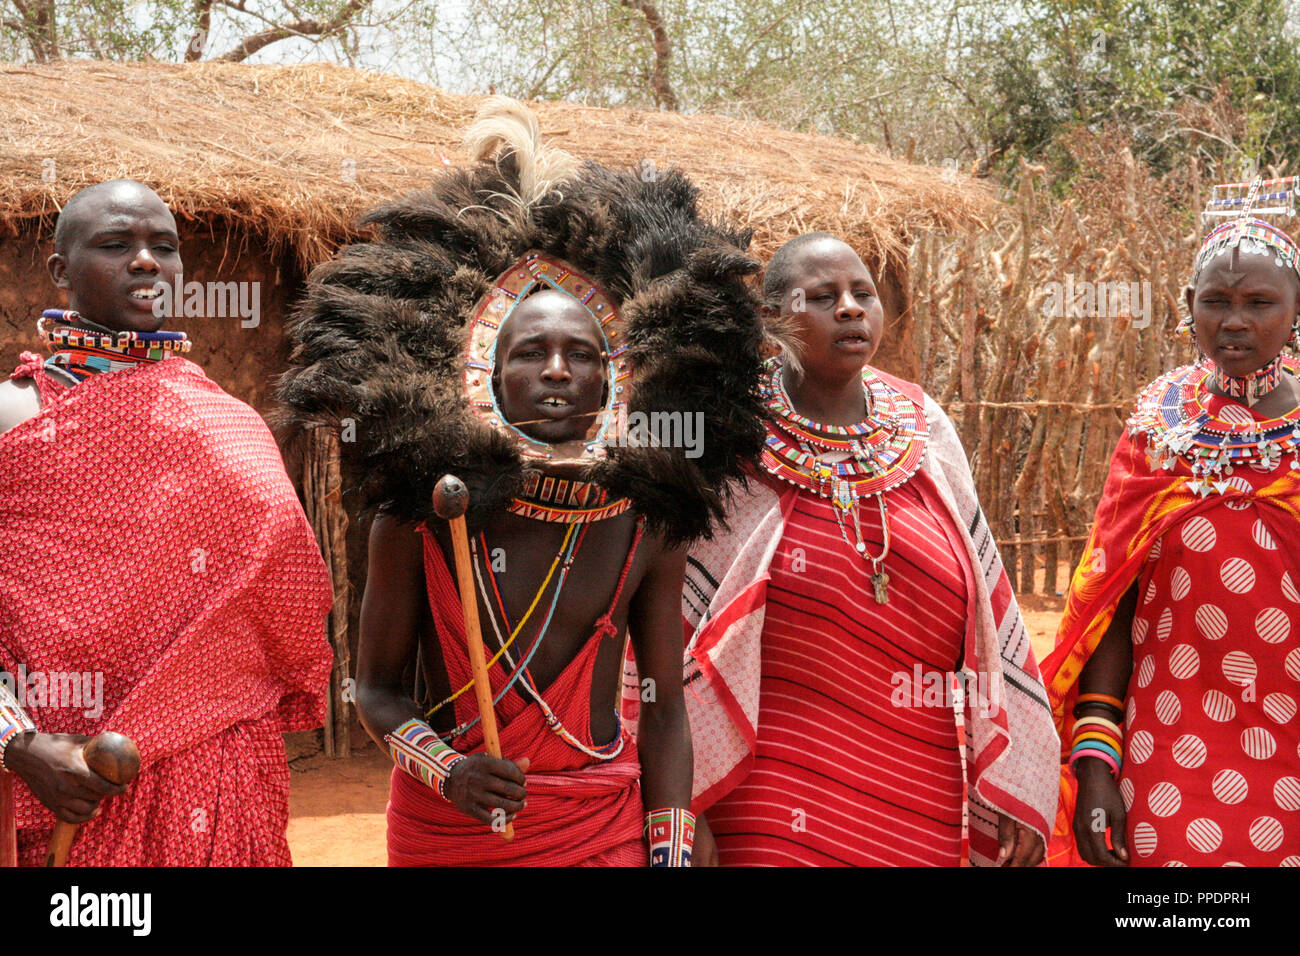 Kenya, Tsavo National Park, 03/20/2018 - Masai persone nel loro villaggio in costume tradizionale Foto Stock